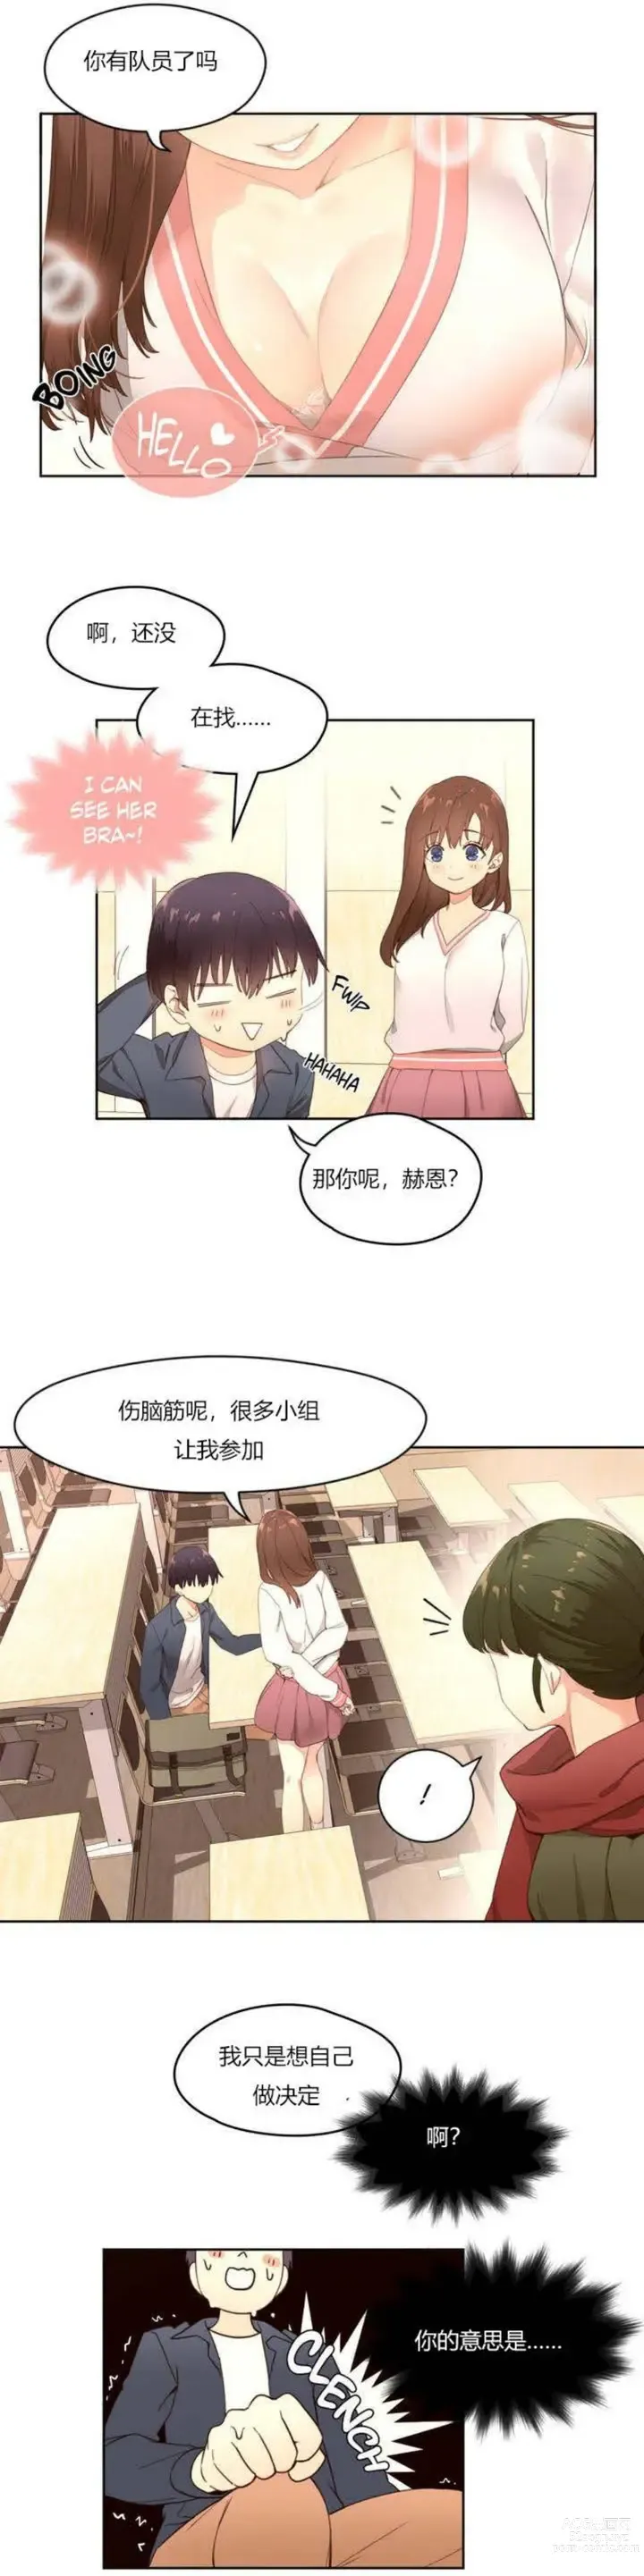 Page 6 of manga 秘香／費洛蒙香水／Pheromone Holic